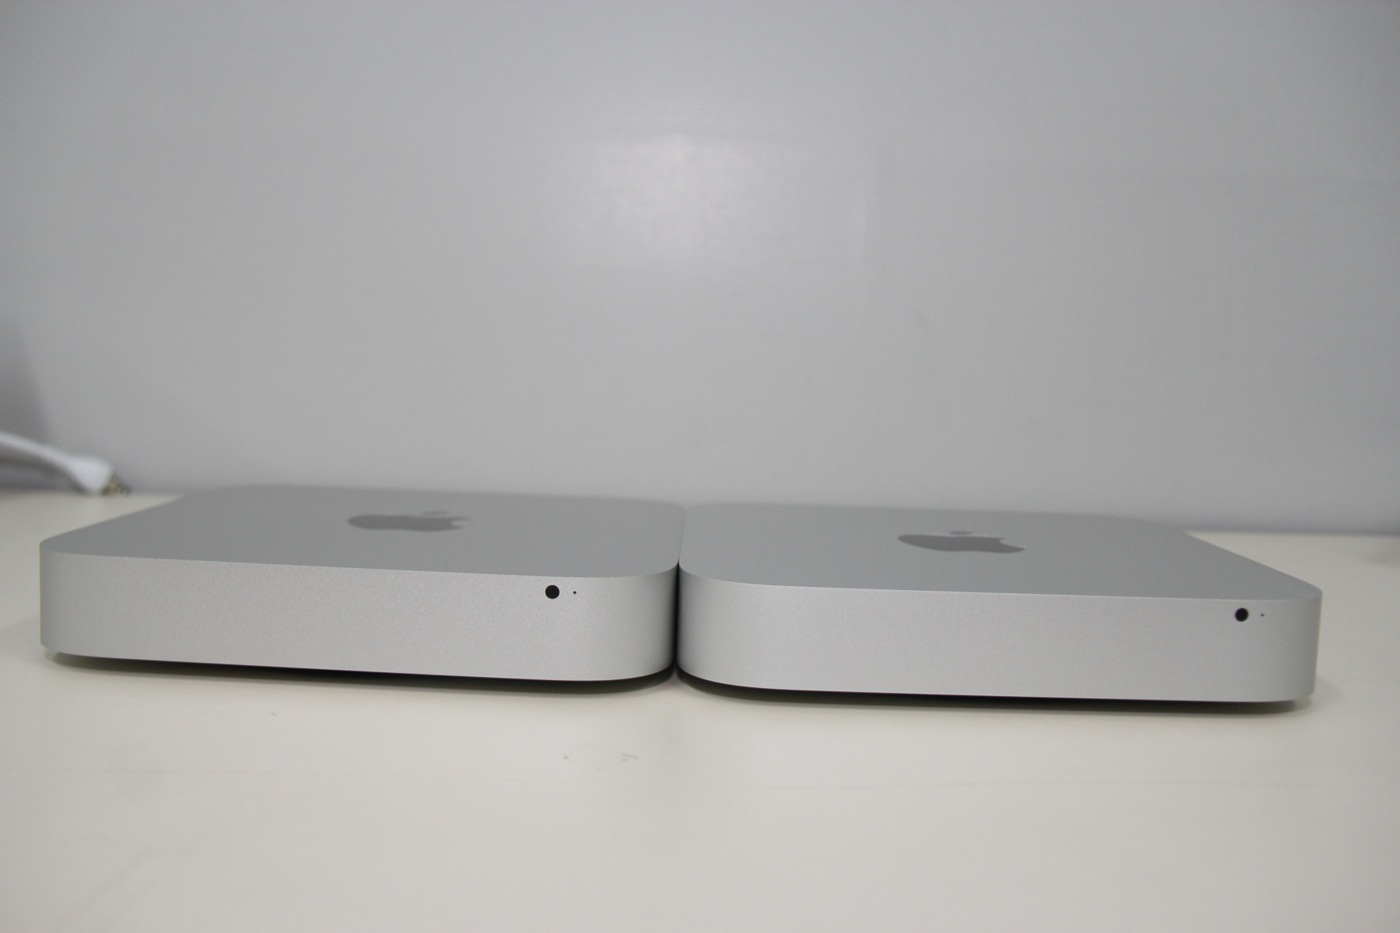 Mac mini (mediados de 2011) - Especificaciones técnicas (ES)